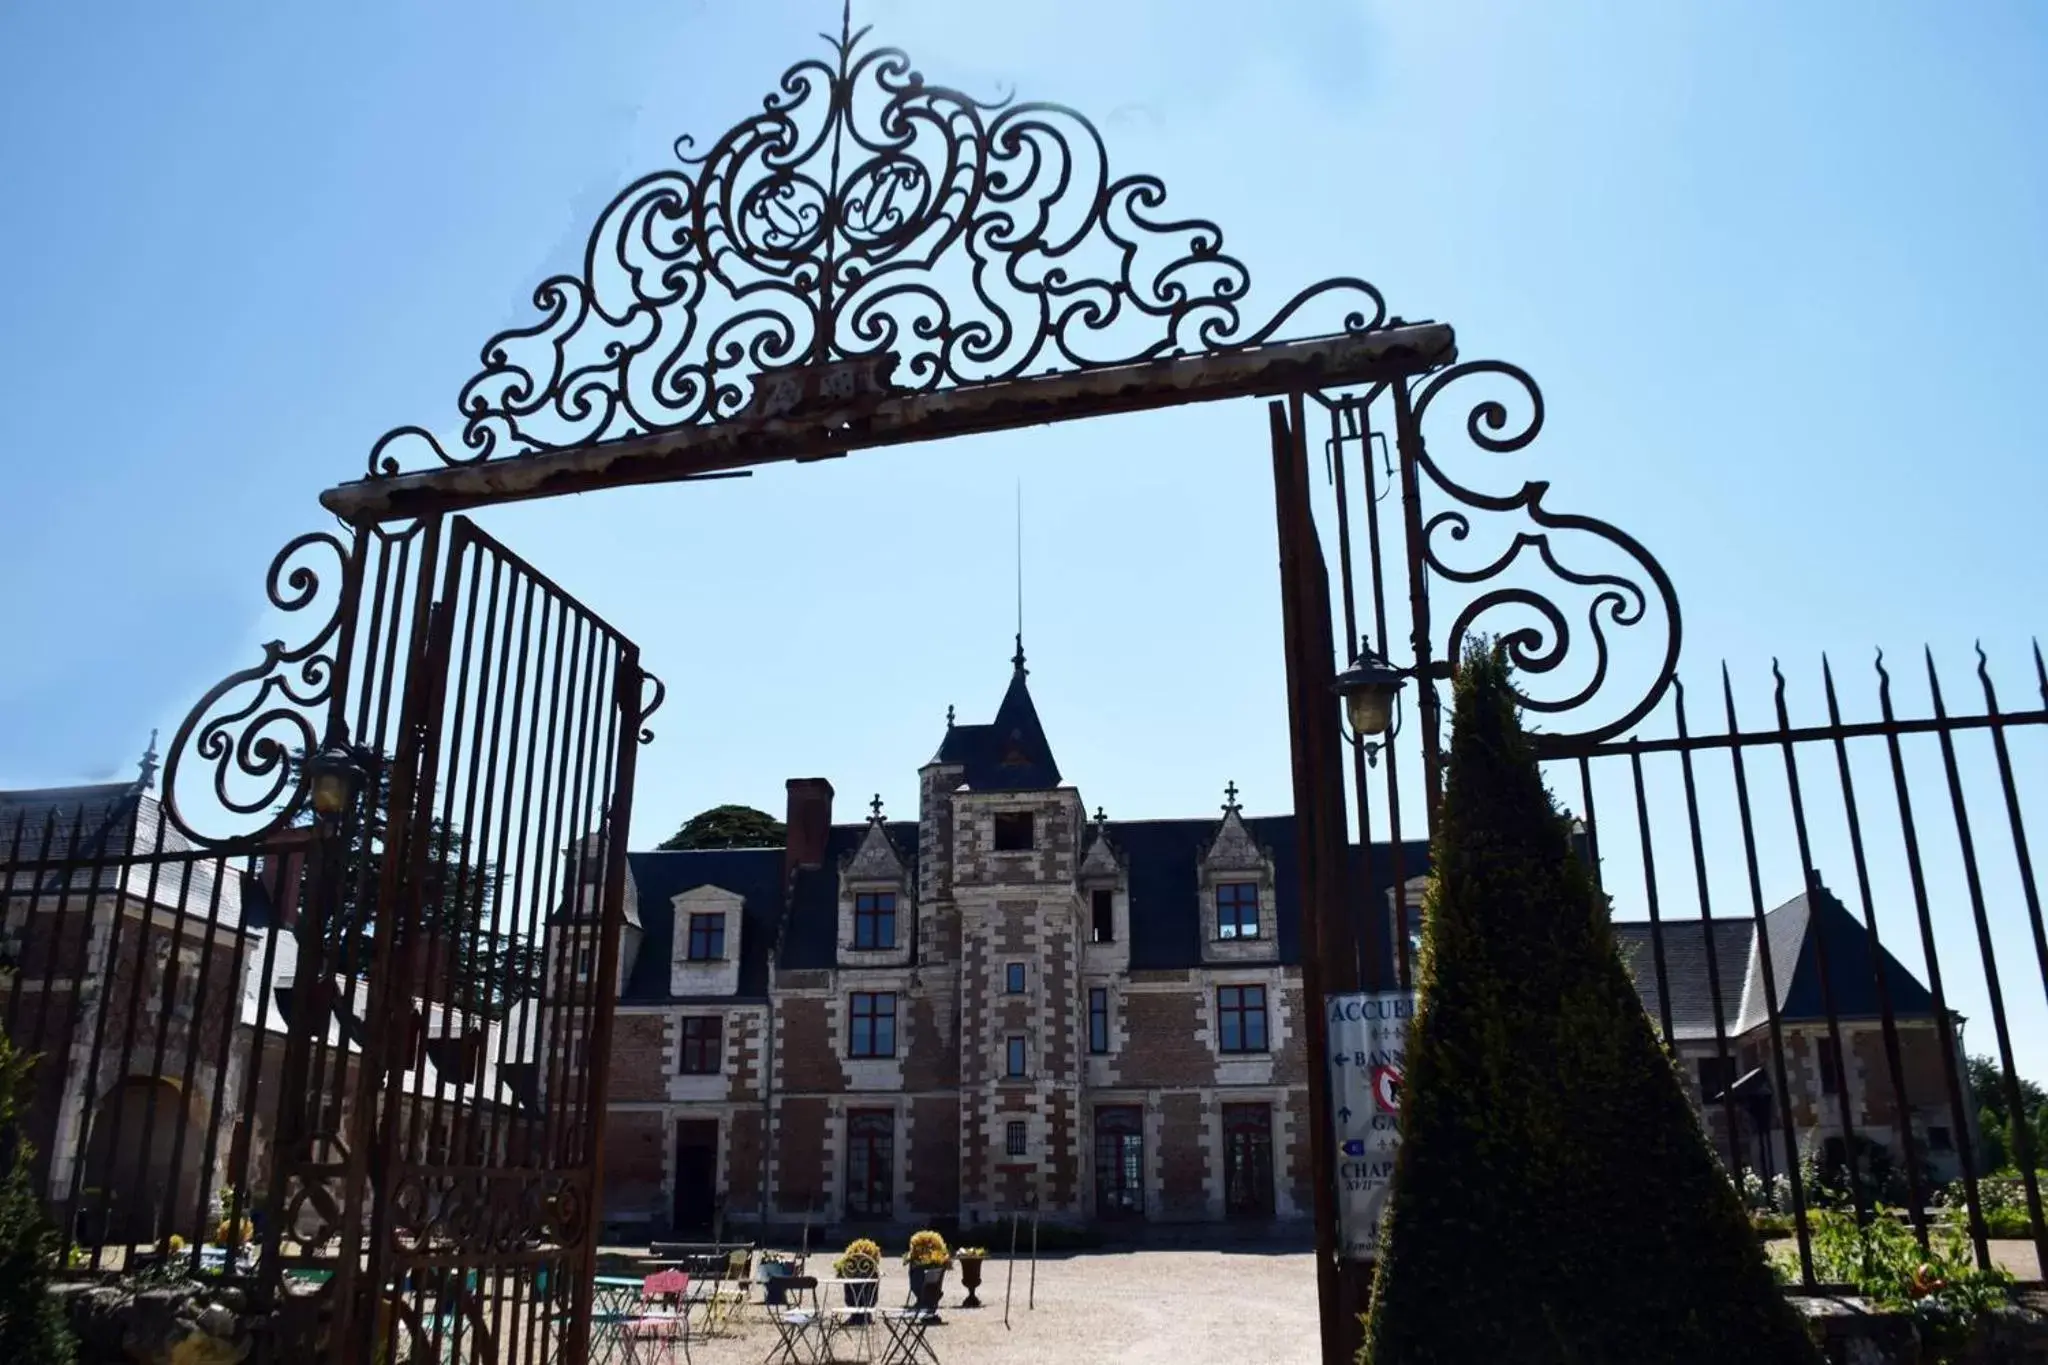 Property building in Chateau de Jallanges - Les Collectionneurs